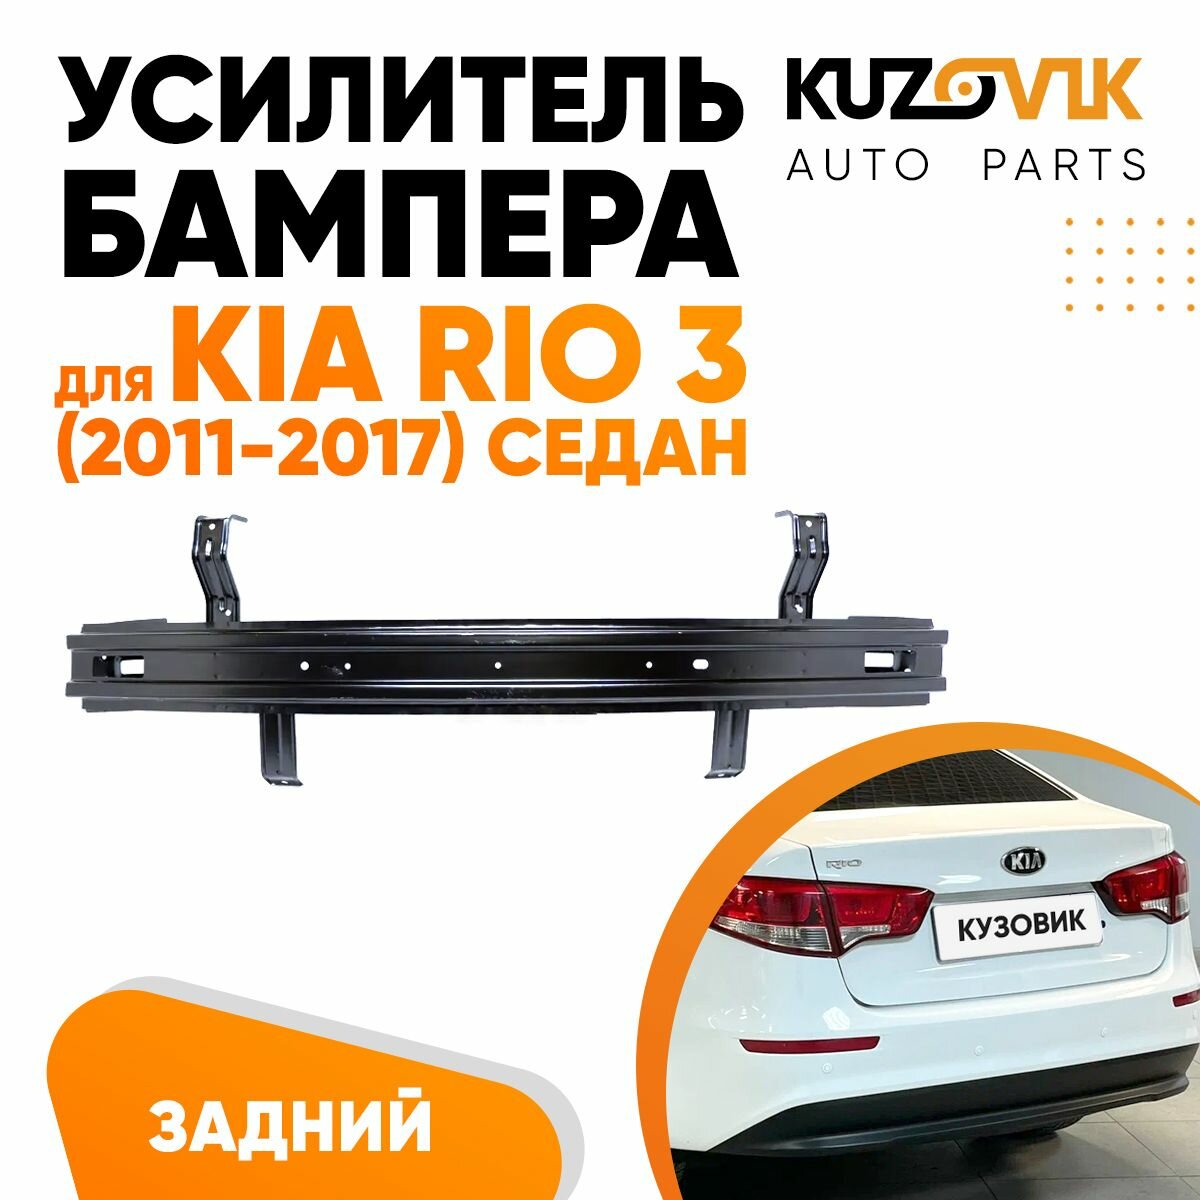 Усилитель заднего бампера Kia Rio 3 (2011-2017) седан